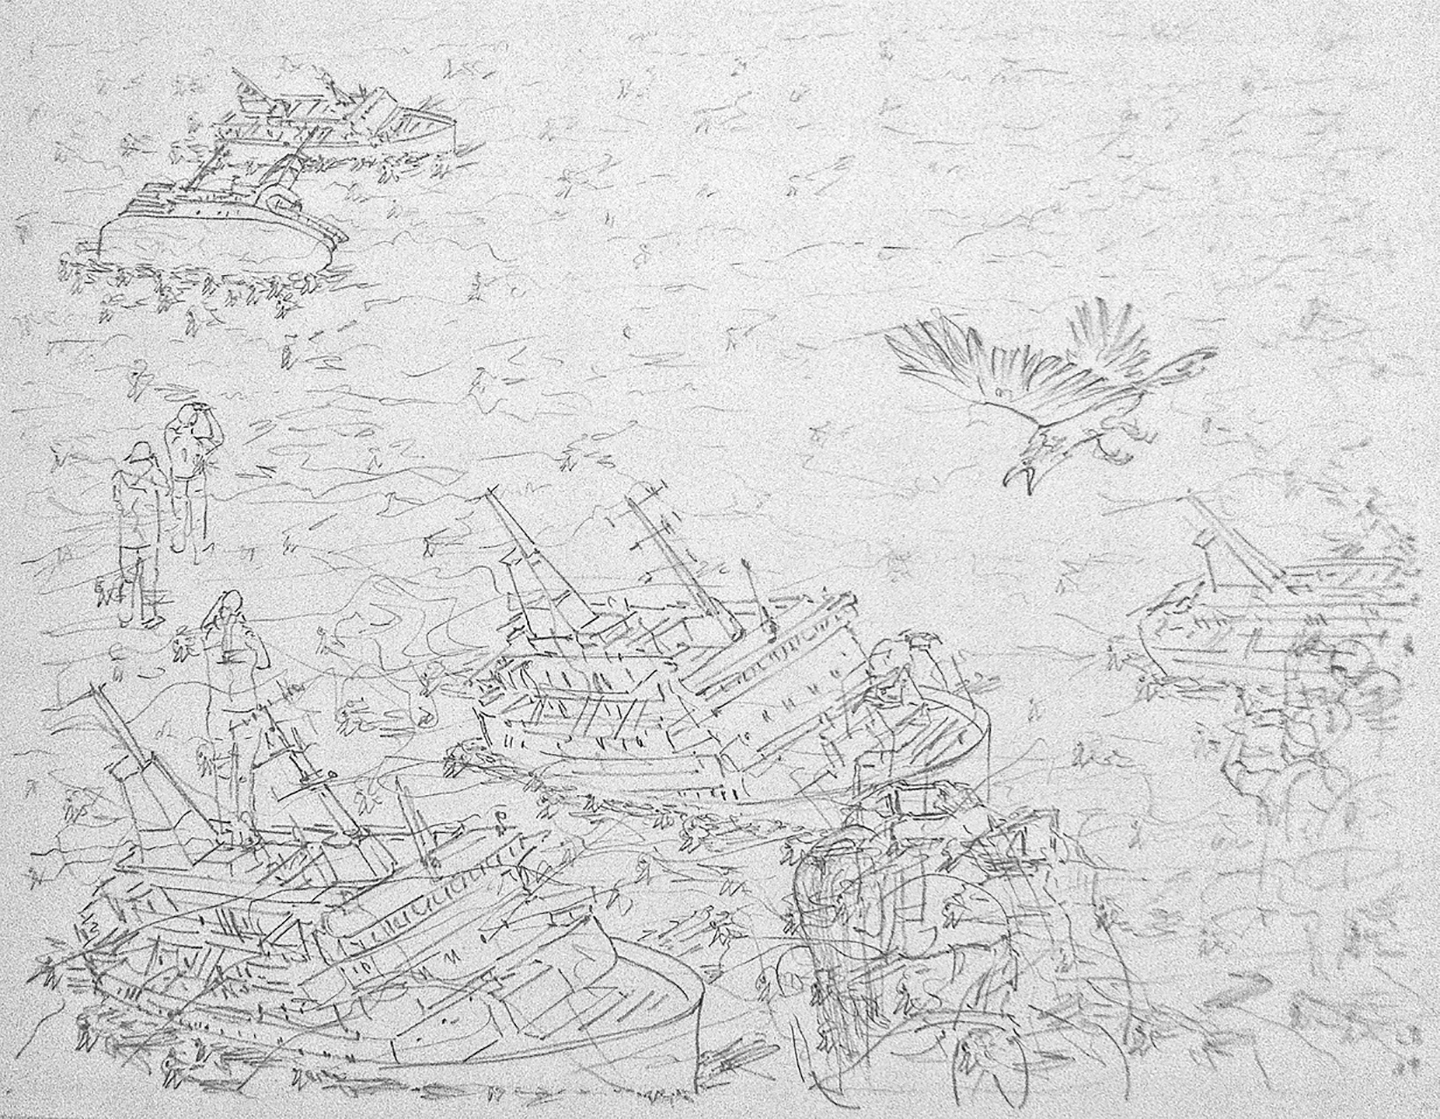 © Leo Brunschwiler, sinkende Schiffe, tote Rotschwänzchen, Touristen und angreifender Vogel, Bleistift auf Polyesterfolie, 28 cm x 35 cm , 2019
